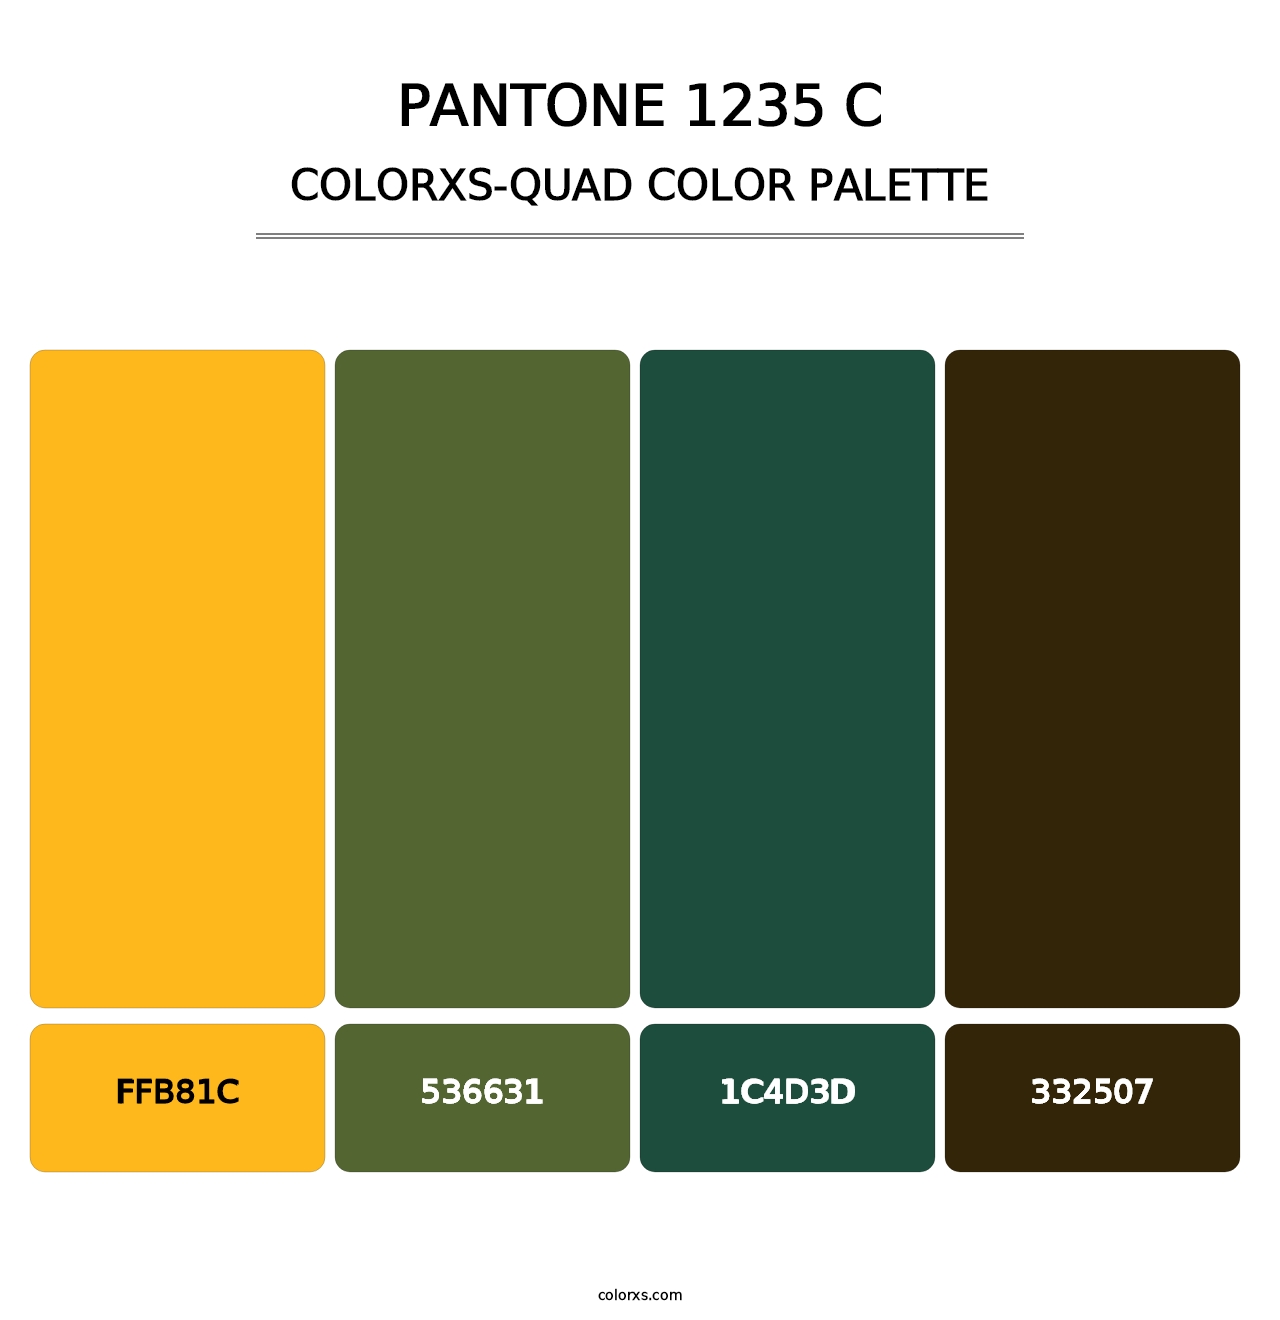 PANTONE 1235 C - Colorxs Quad Palette